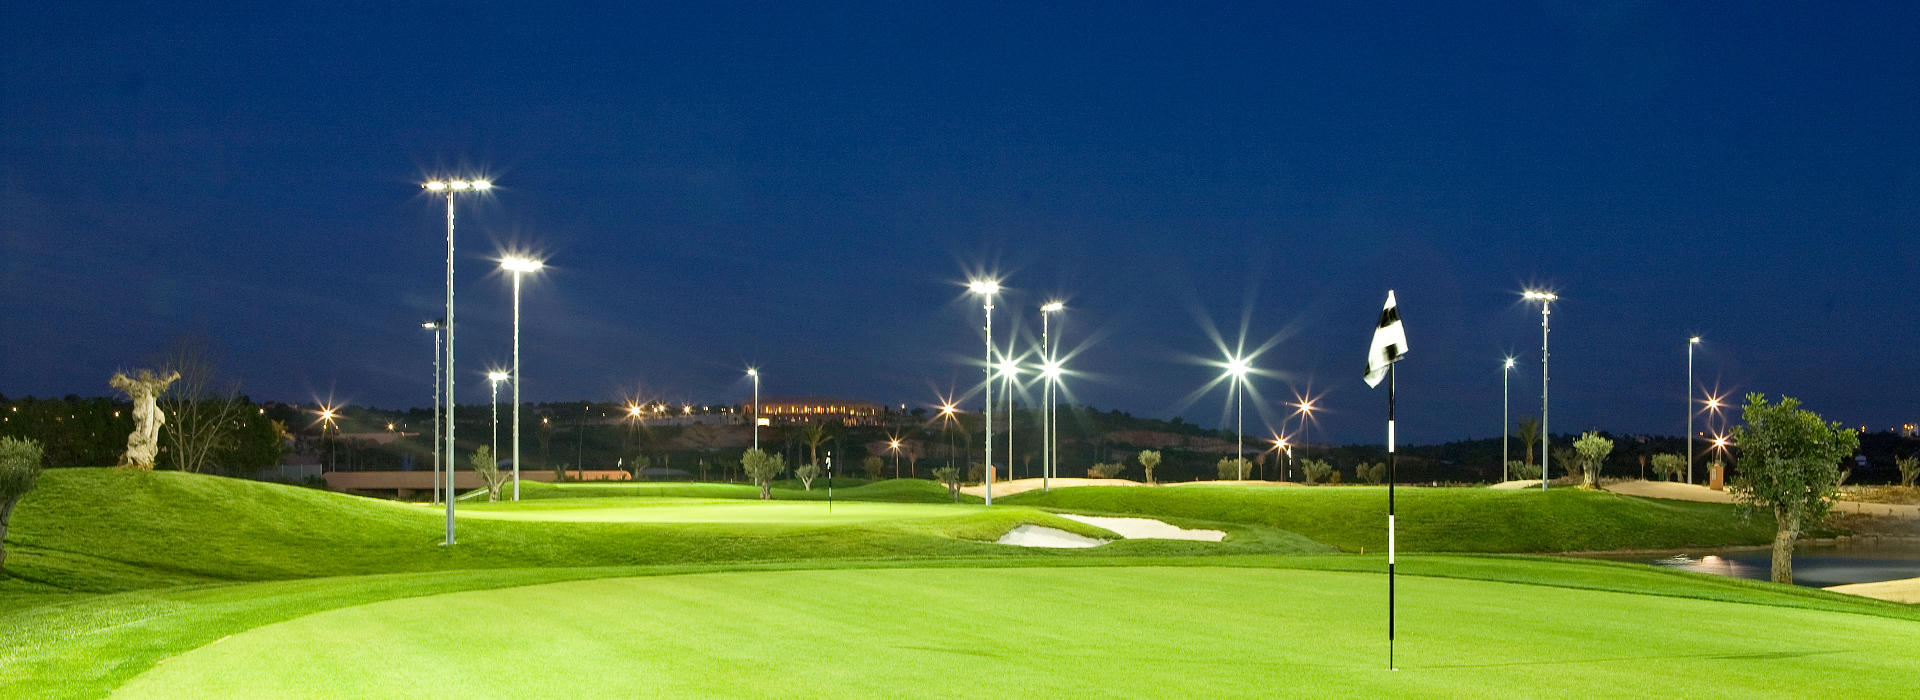 Golf Academy à noite